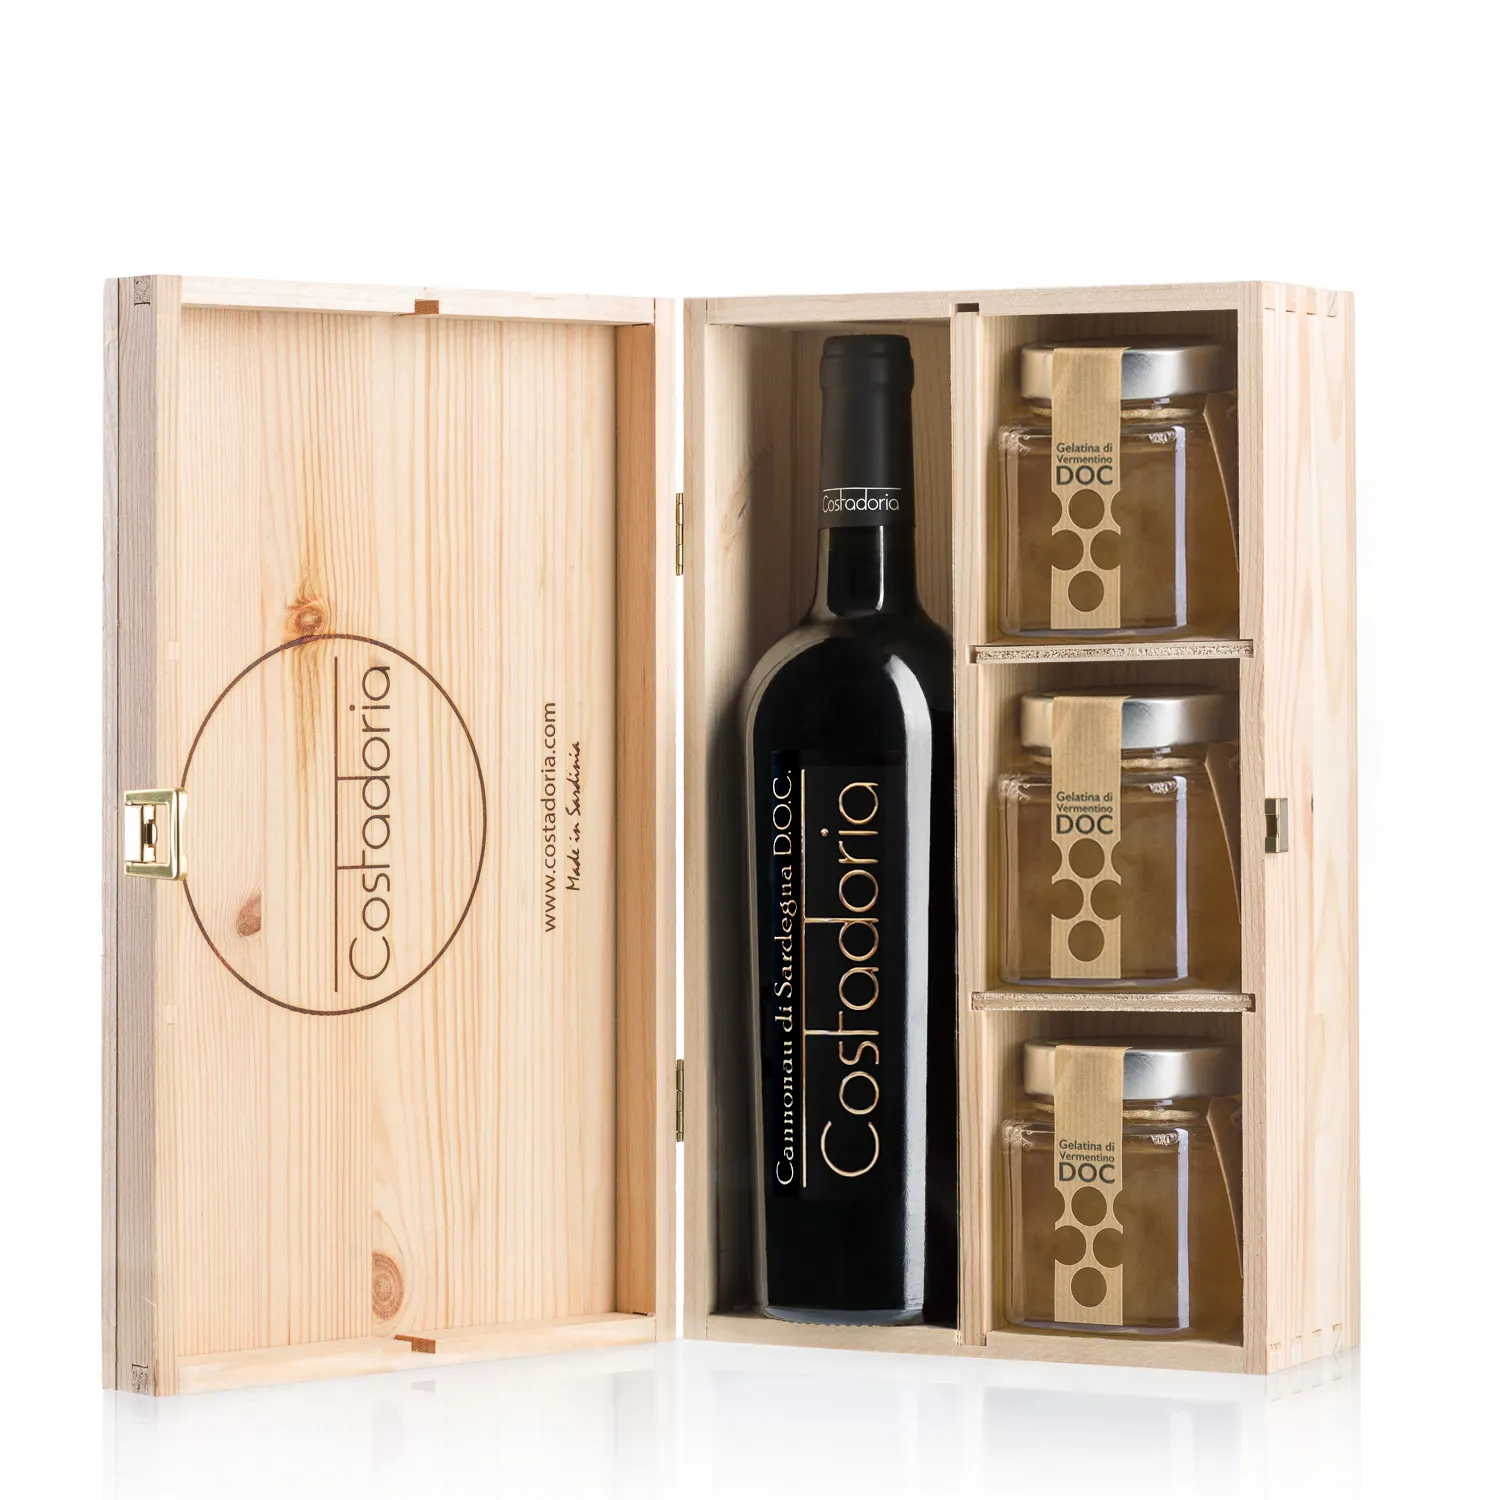 Лучшие итальянские деревянные подарочные коробки Costadoria cannonau, сильный парфюм, ароматические травы, красное вино и трис-вины, желе